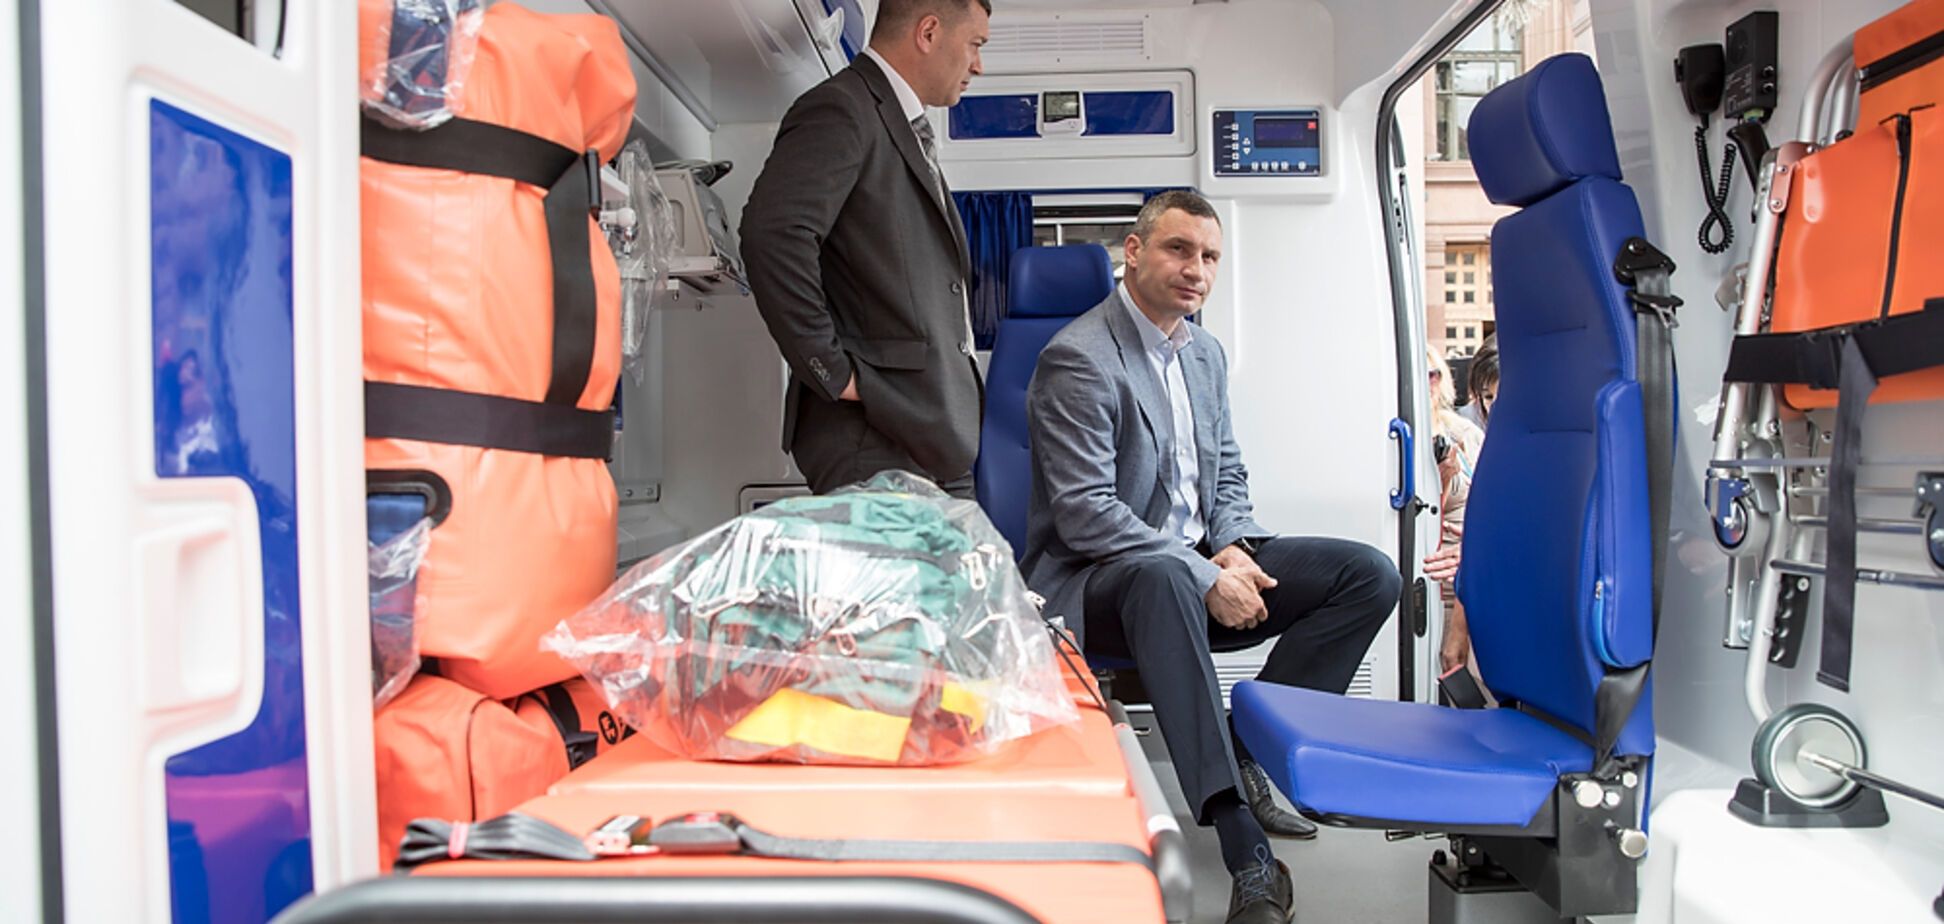 Кличко передав 25 швидких з сучасним медичним обладнанням для потреб екстреної меддопомоги